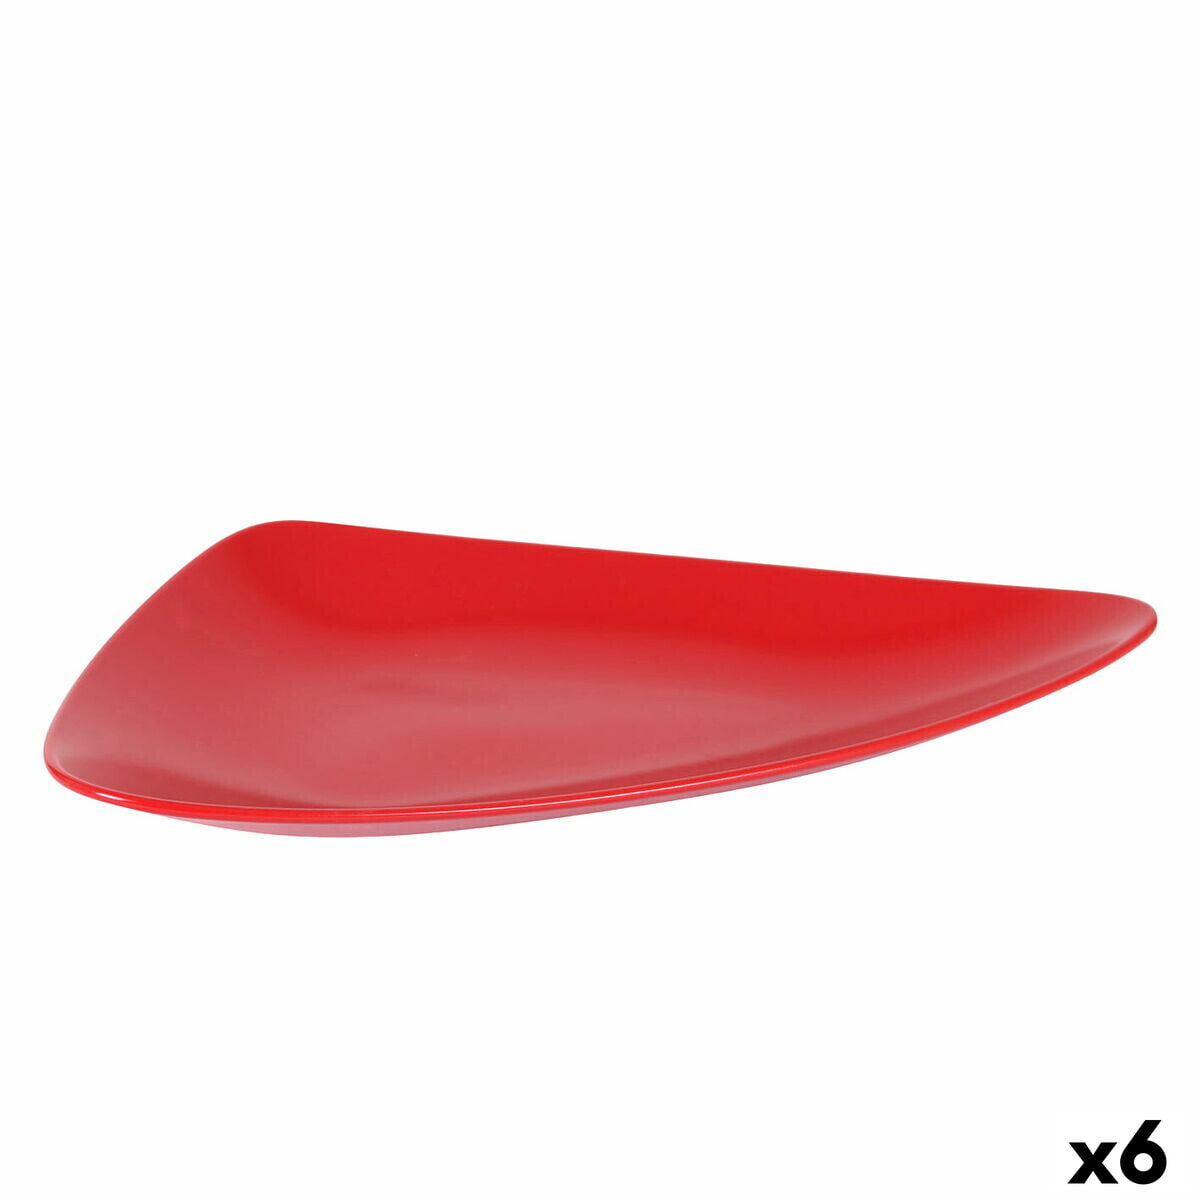 поднос для закусок Керамика Красный 41 x 24 x 5 cm (6 штук)